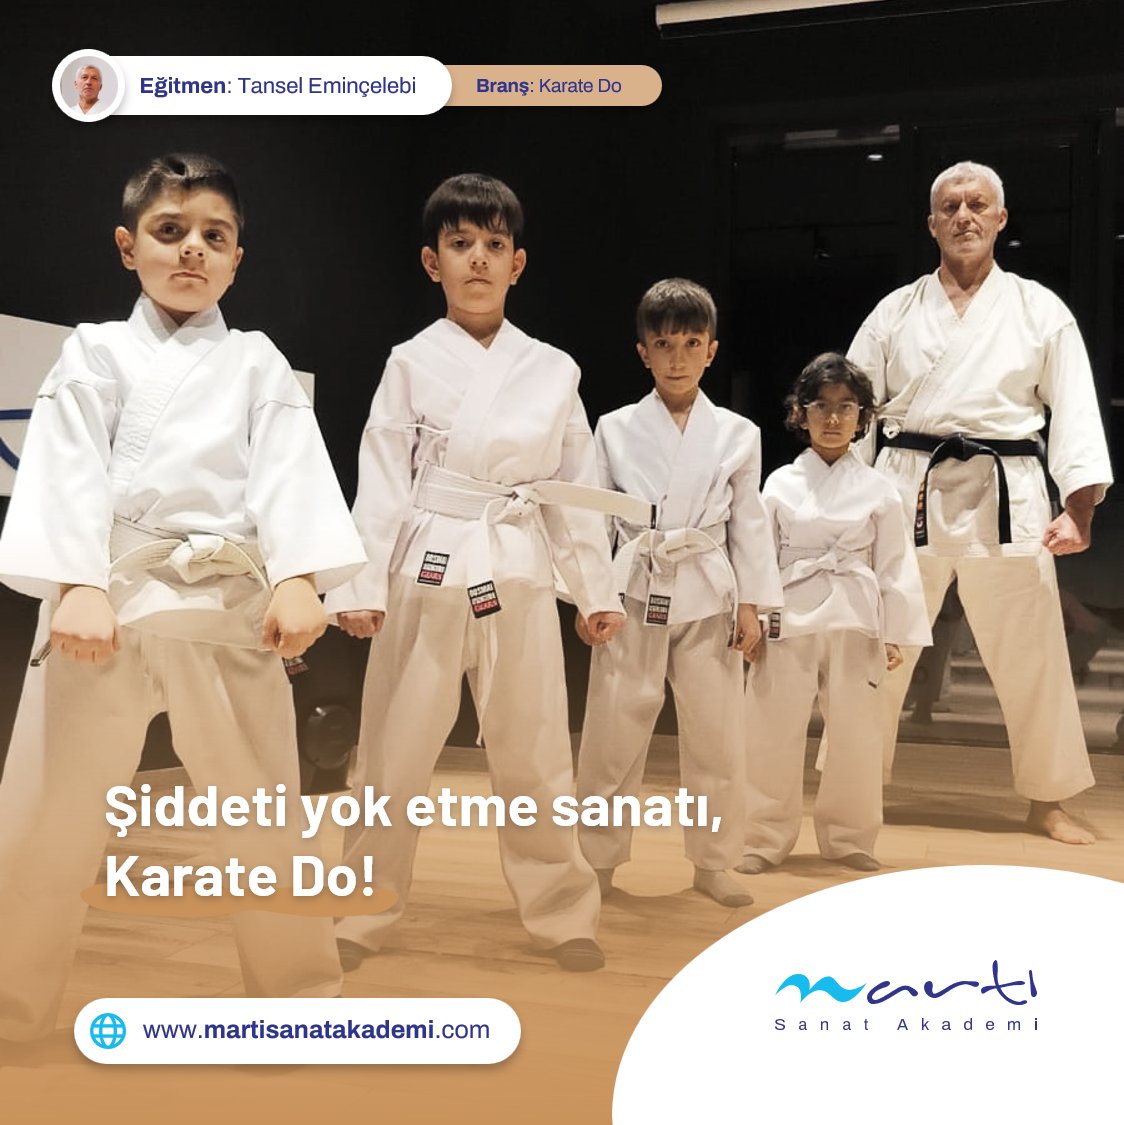 Şiddeti yok etme sanatı, Karate Do! 🥋 #karate #karatedo #savunmasanatı